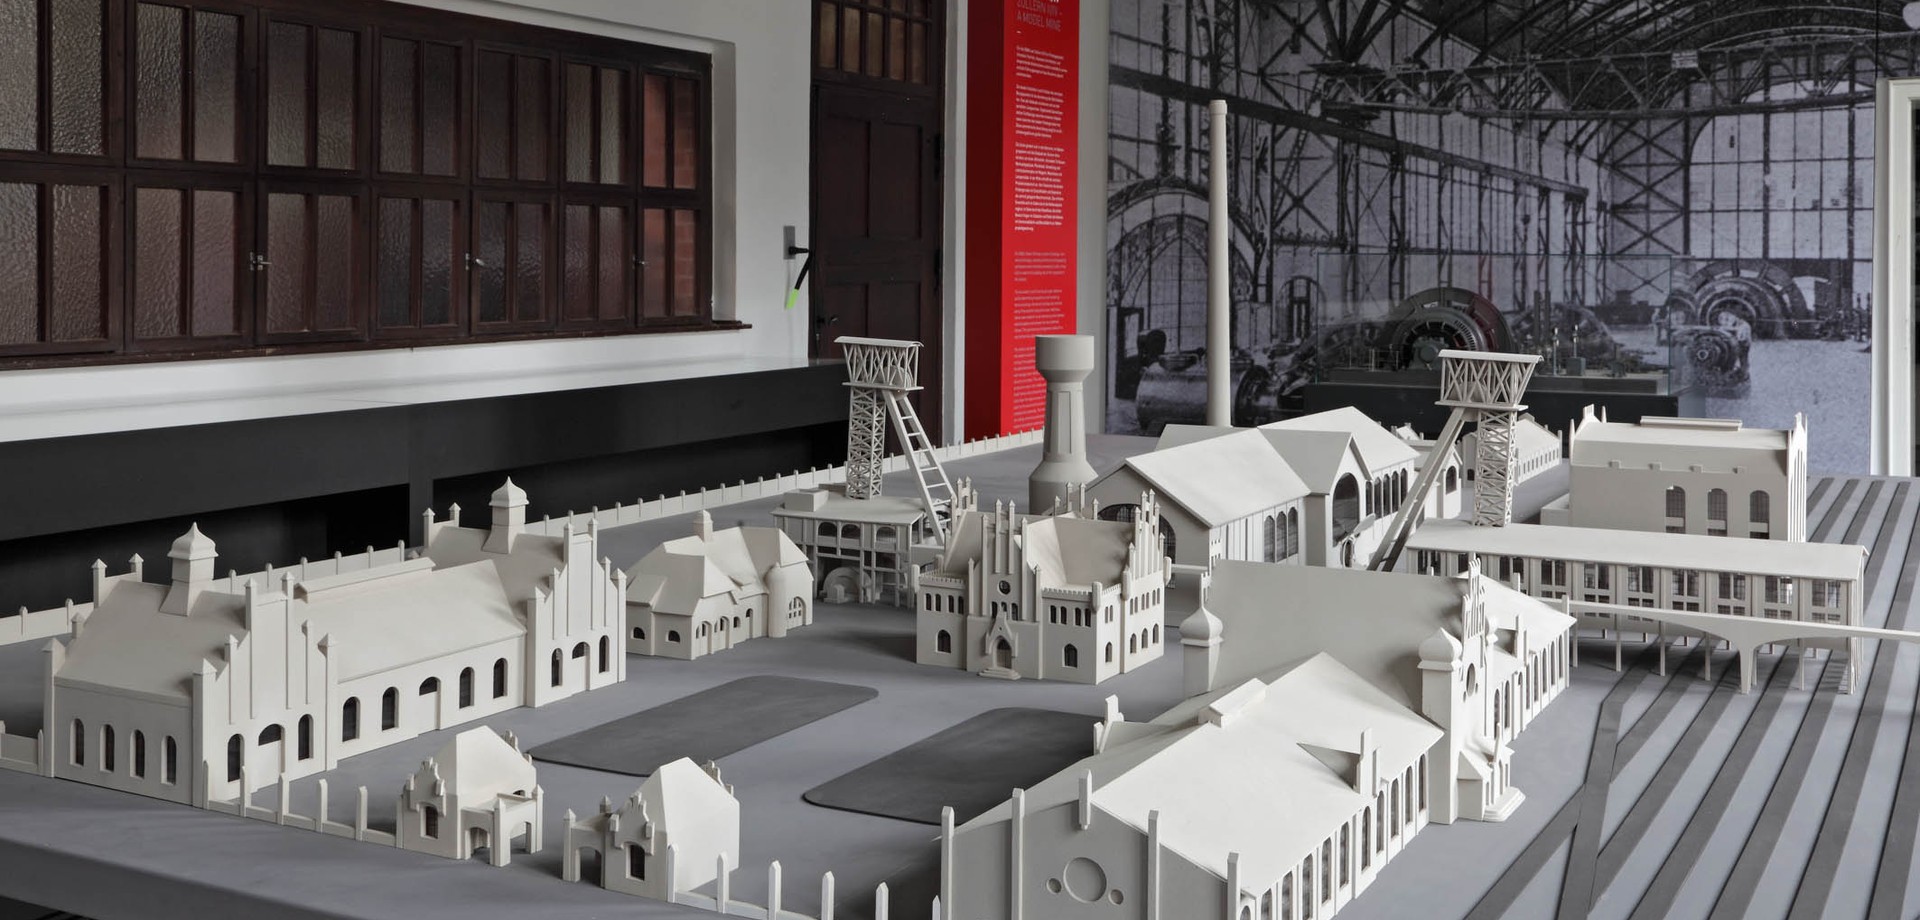 Modell der Tagesanlagen von Zeche Zollern in der Dauerausstellung in der Alten Verwaltung